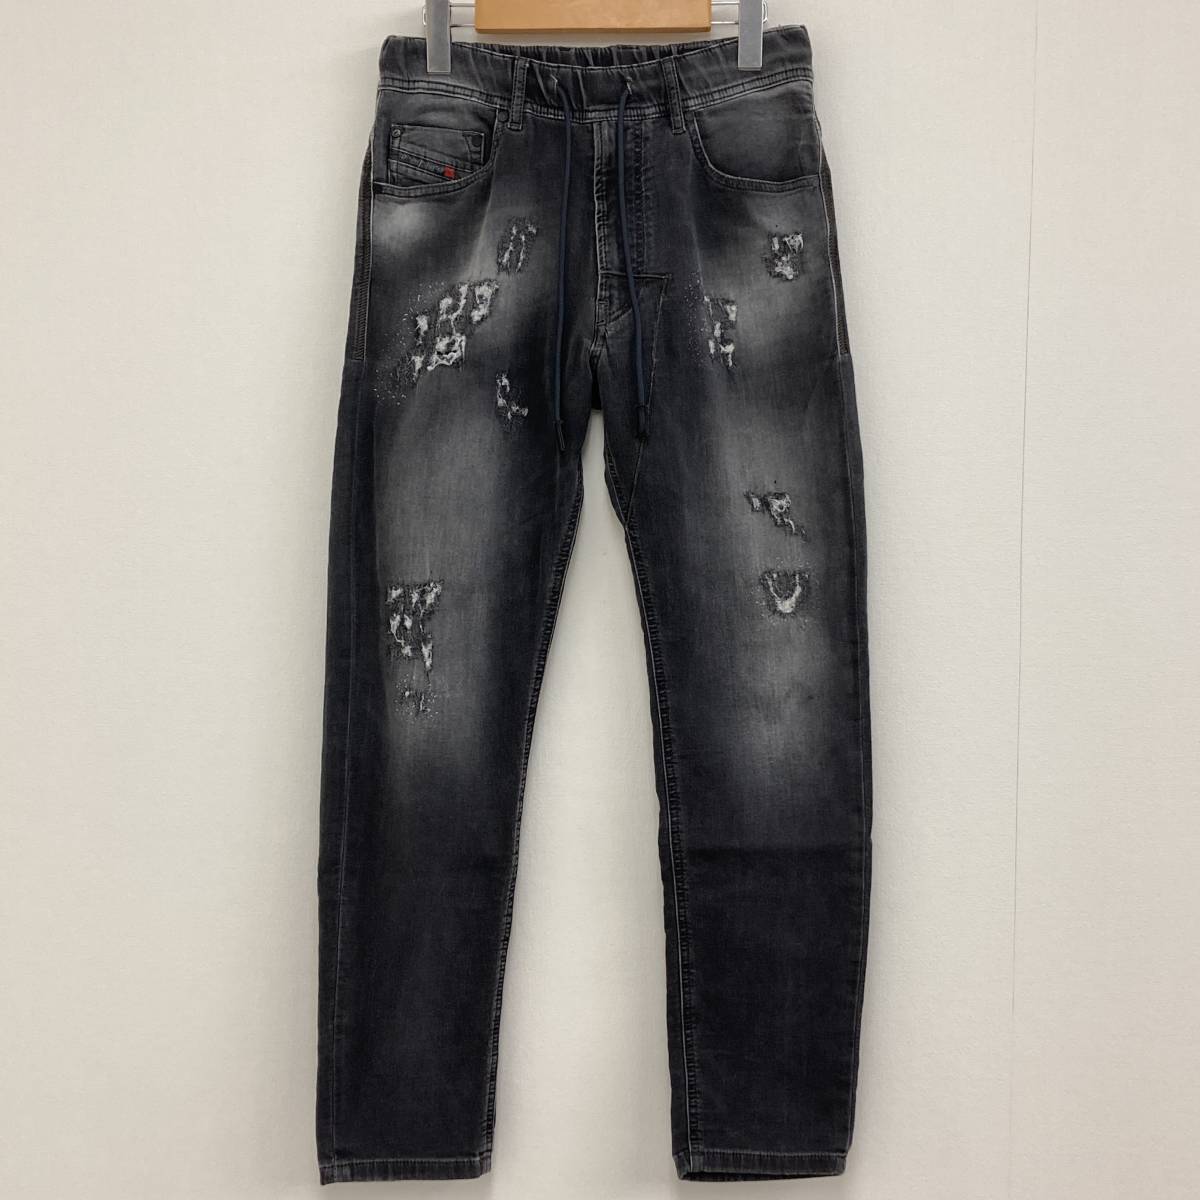 日本最級 ダメージ加工 NARROT Jeans Jogg DIESEL ジョグジーンズ 529